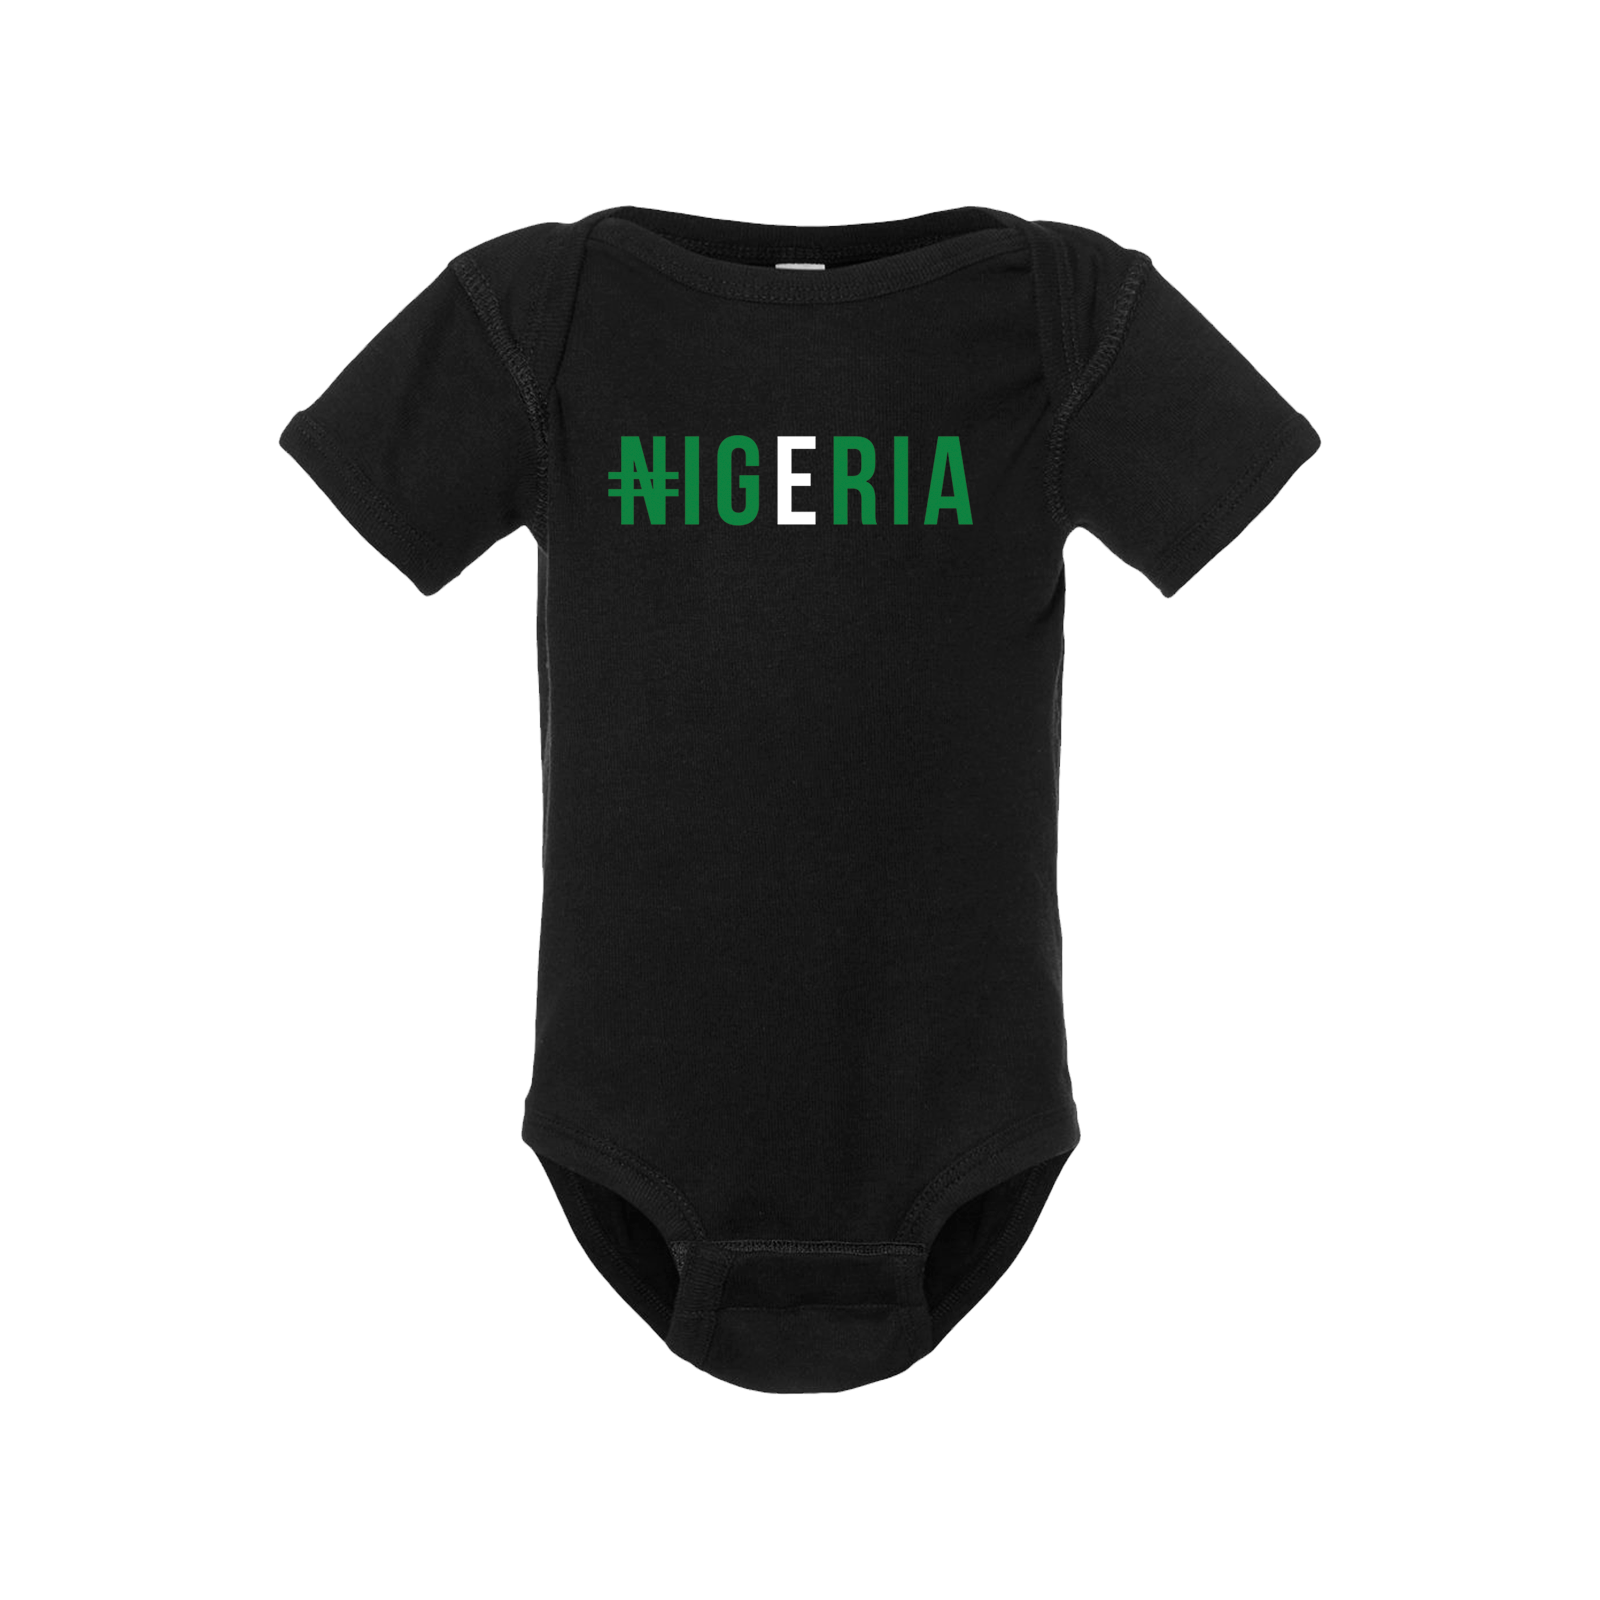 Nigeria Short Sleeve Onesie - Babies & Toddlers